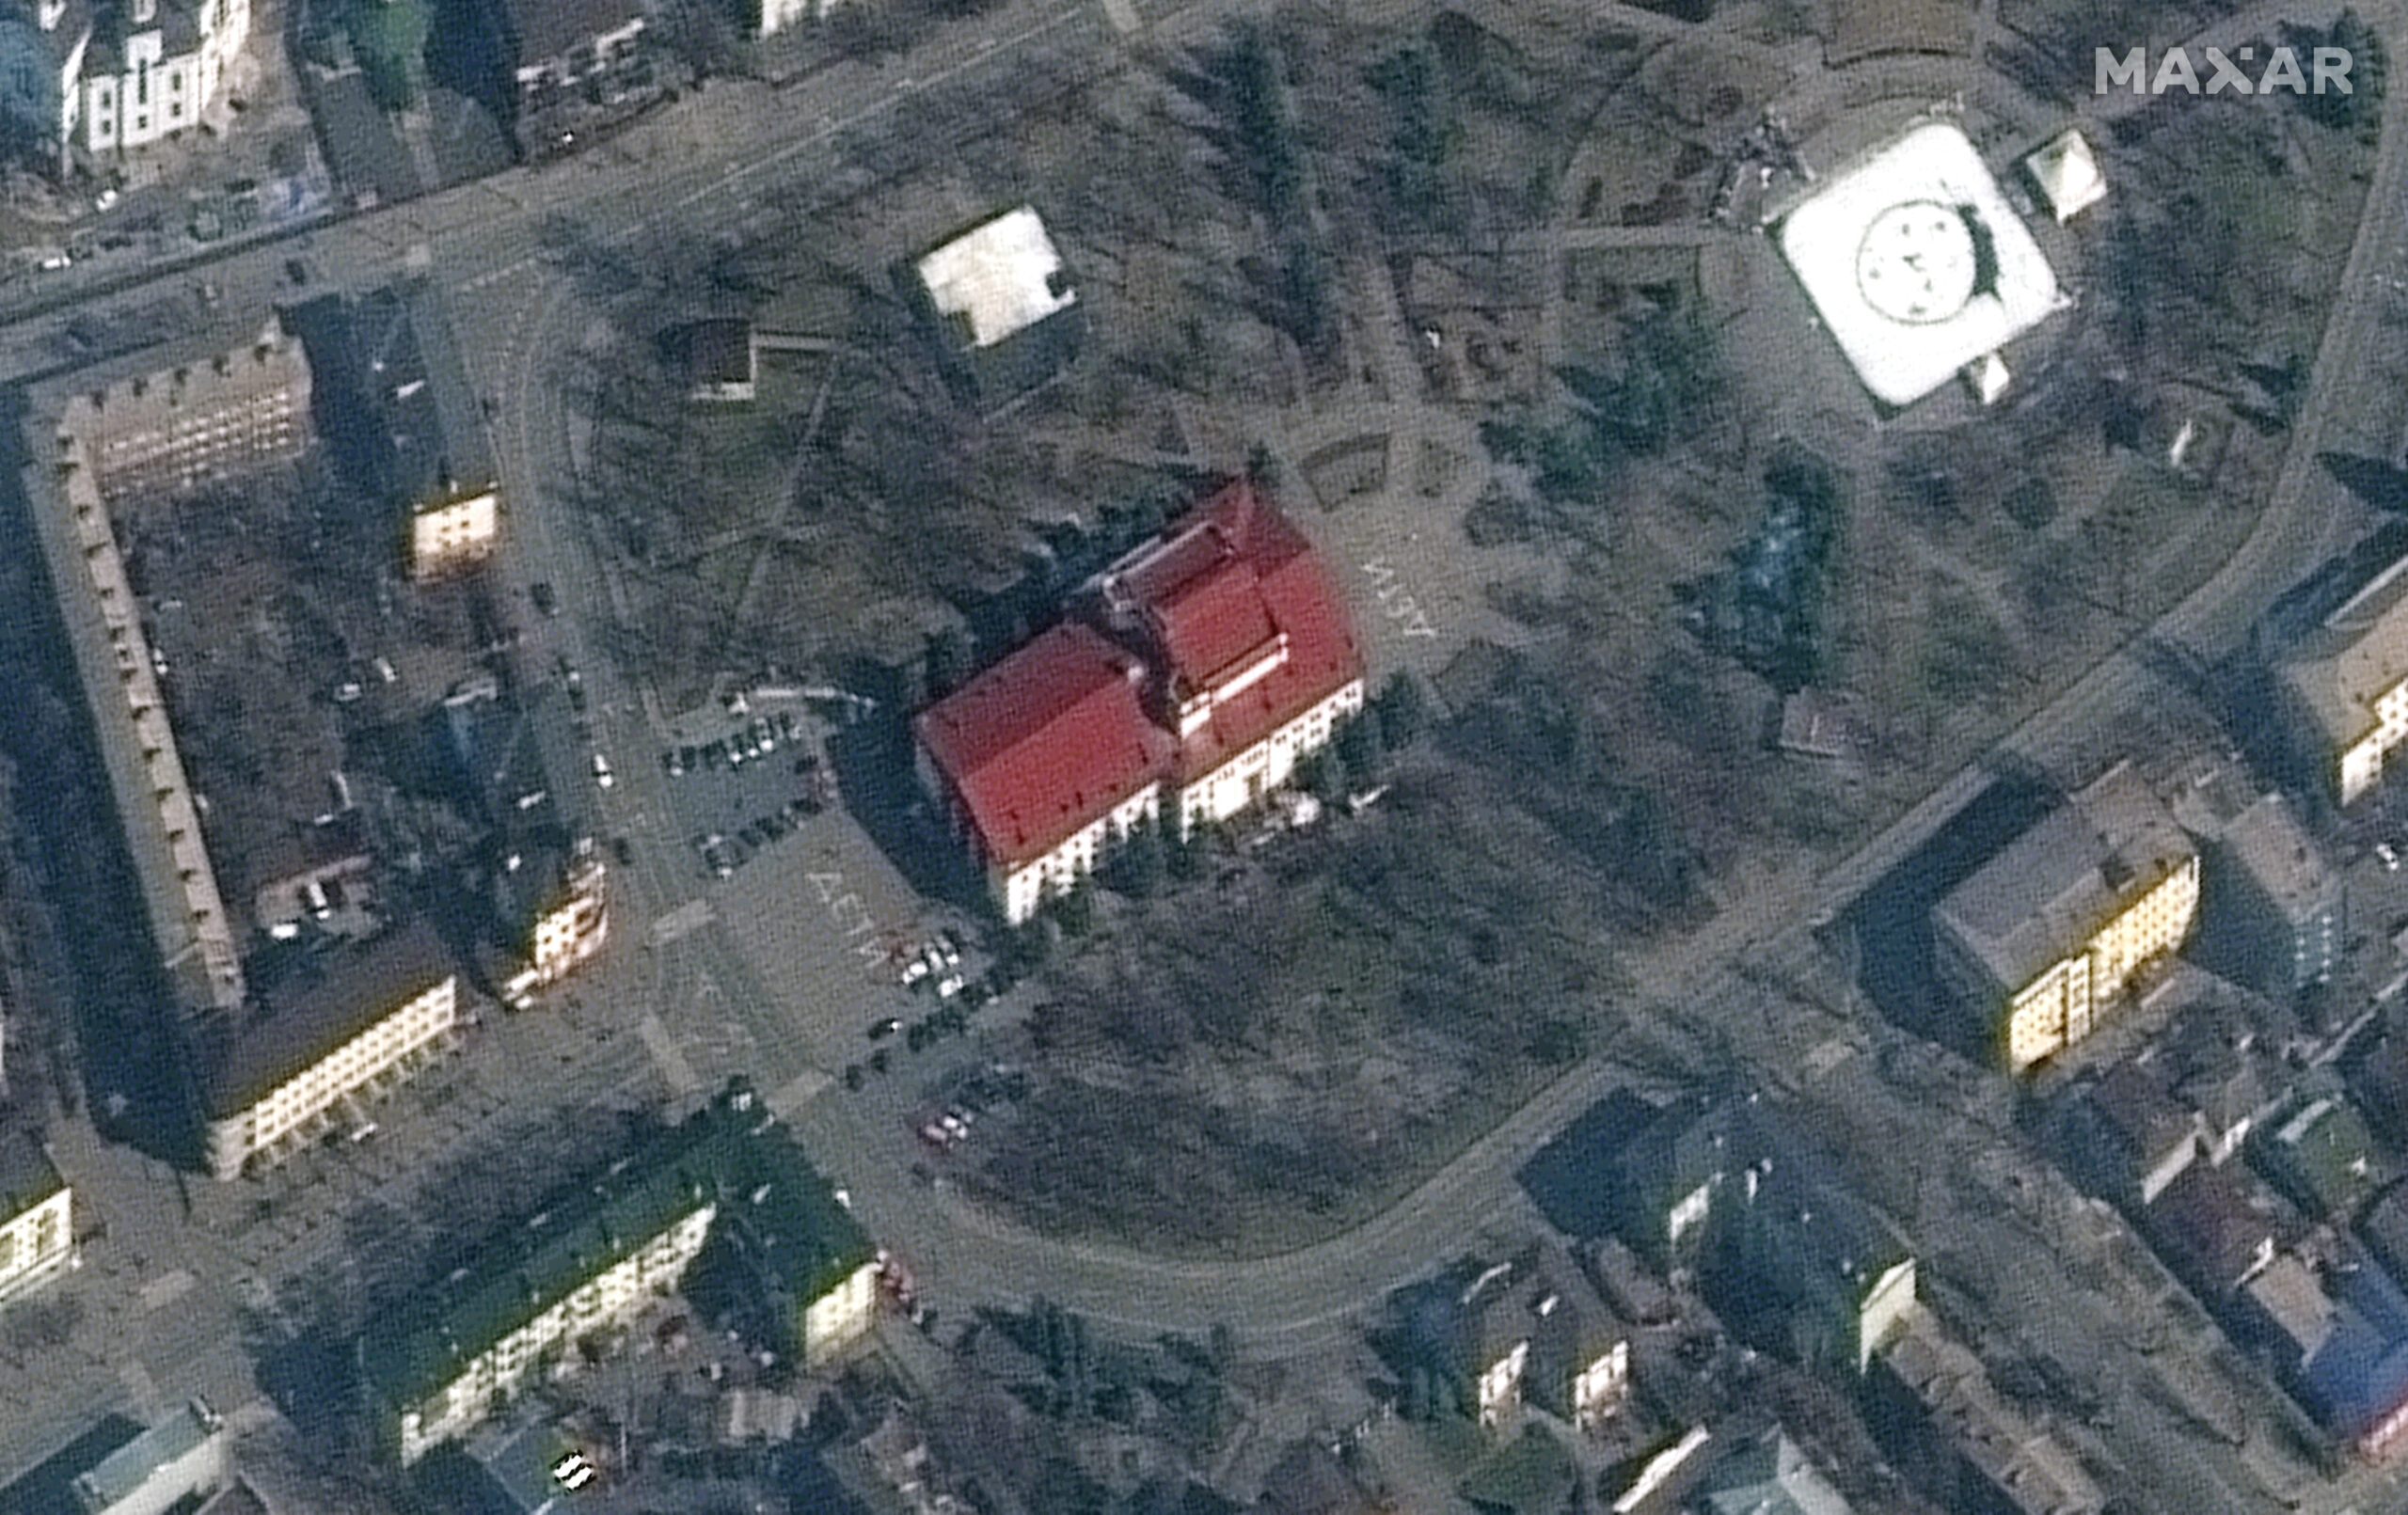 Dieses von Maxar Technologies zur Verfügung gestellte Satellitenbild zeigt das Theater in Mariupol. Vor und hinter dem Gebäude sind Schriftzüge zu sehen.